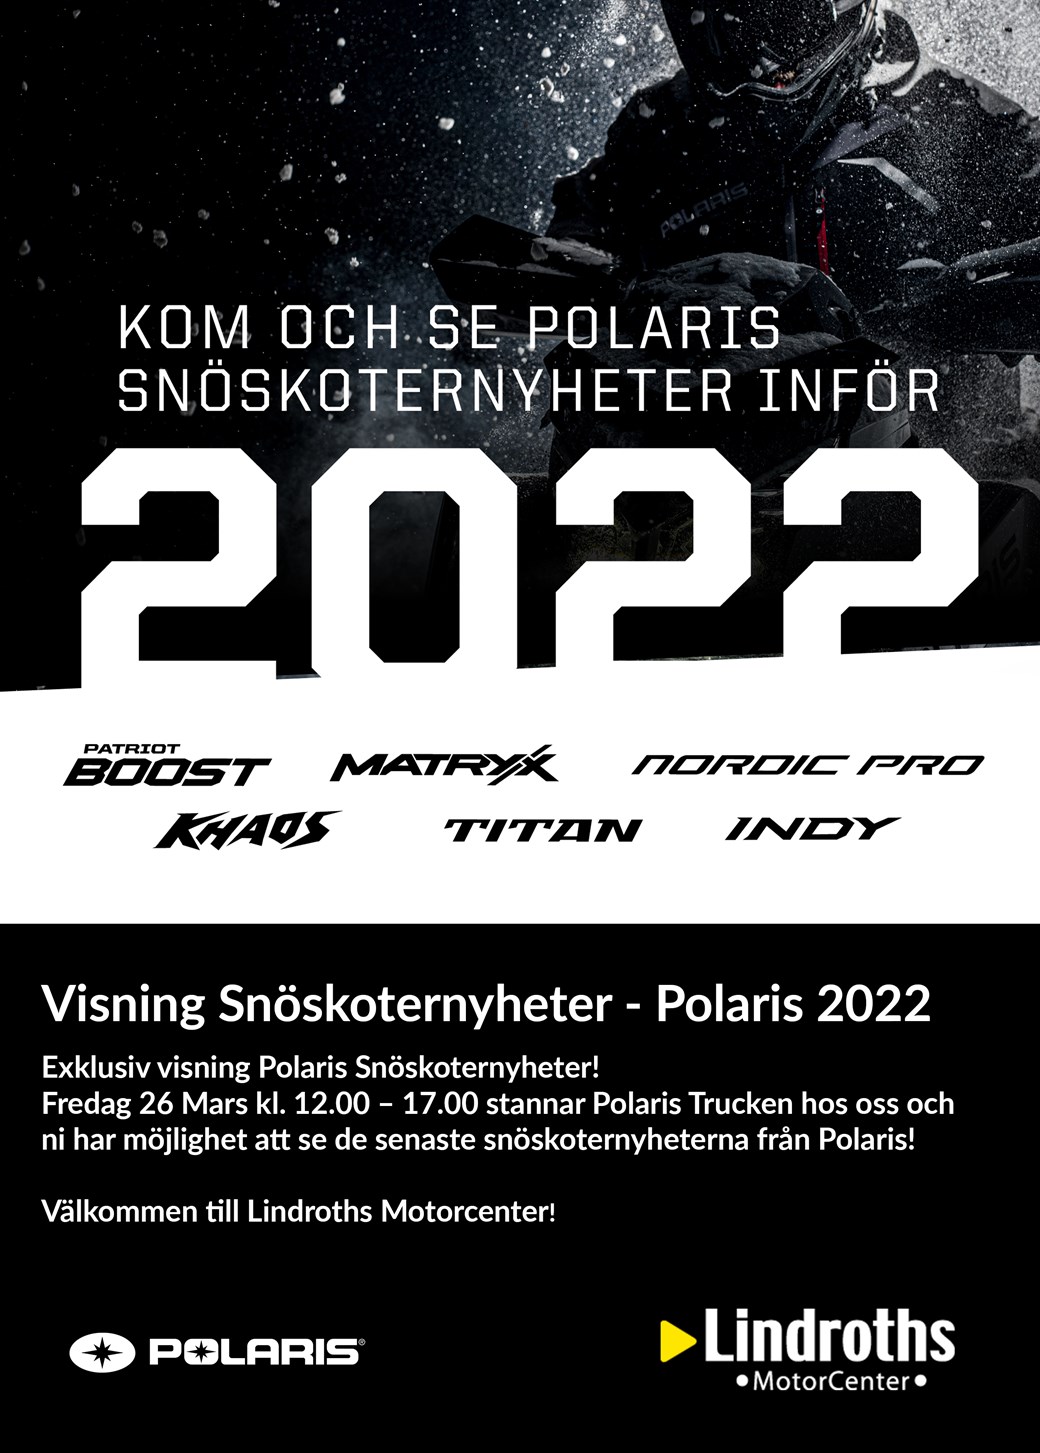 Visning Polaris Snöskoternyheter 2022!